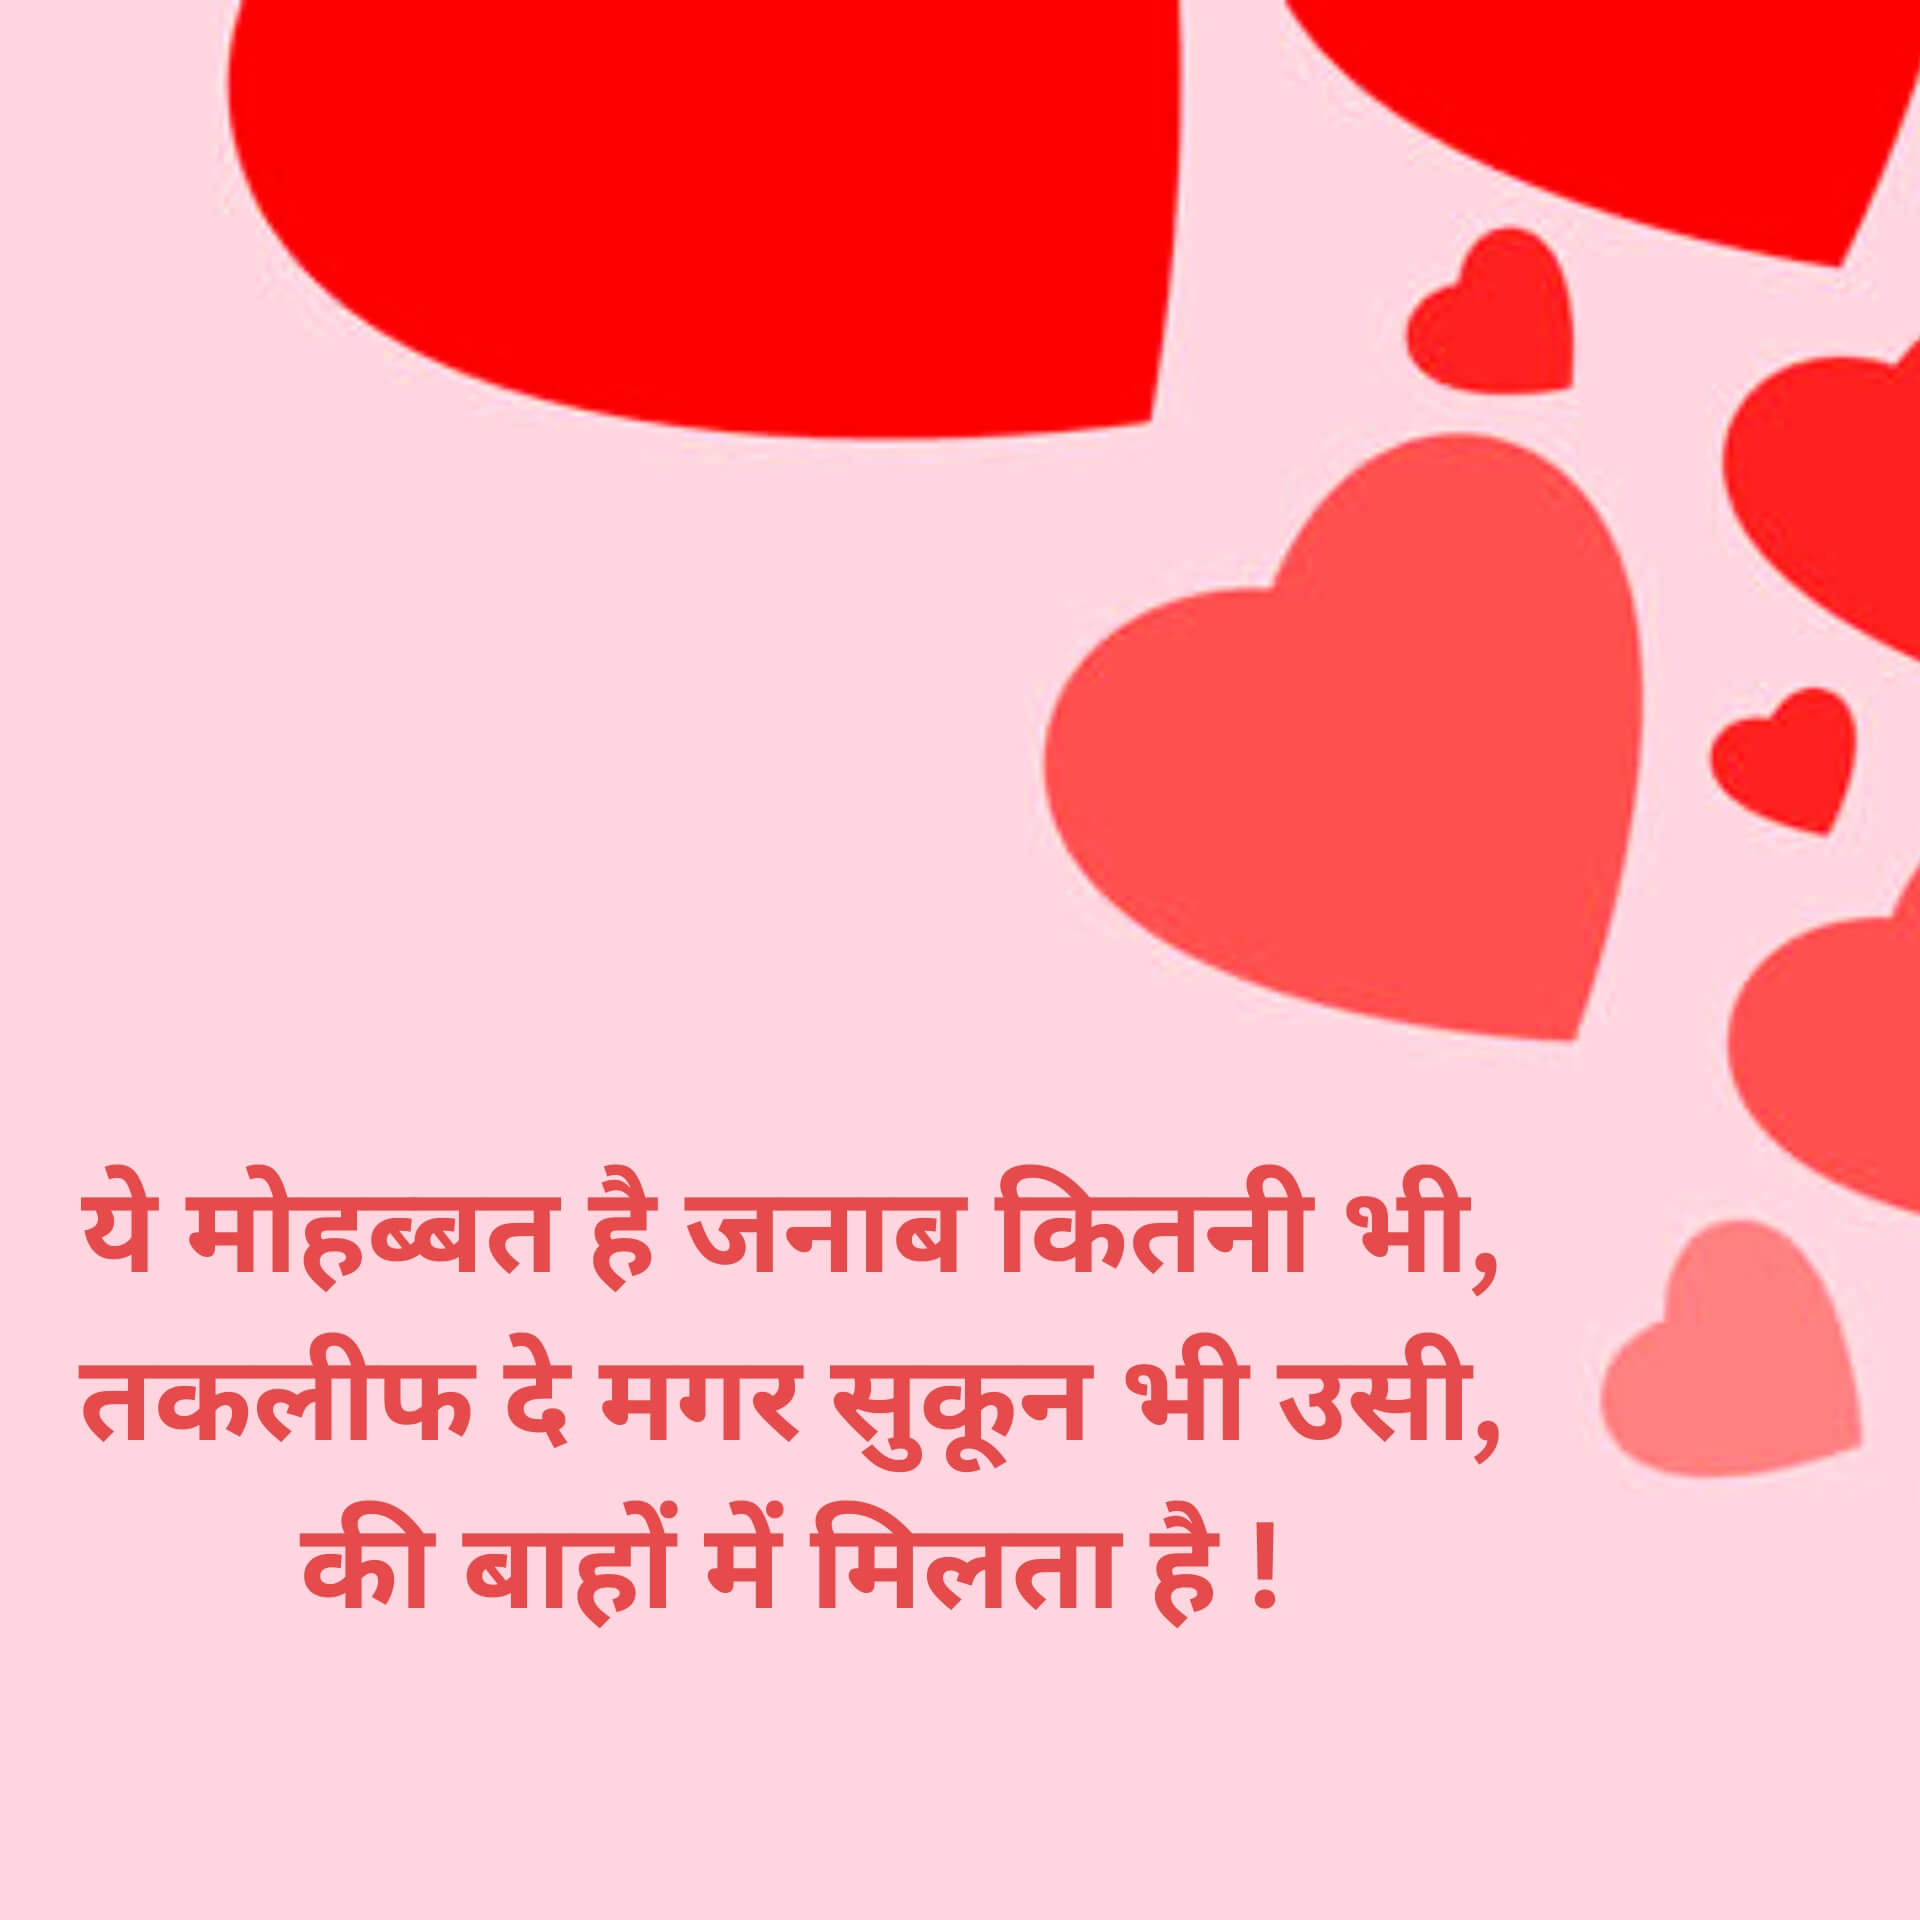 83+ Hindi Love Shayari Images Free Download